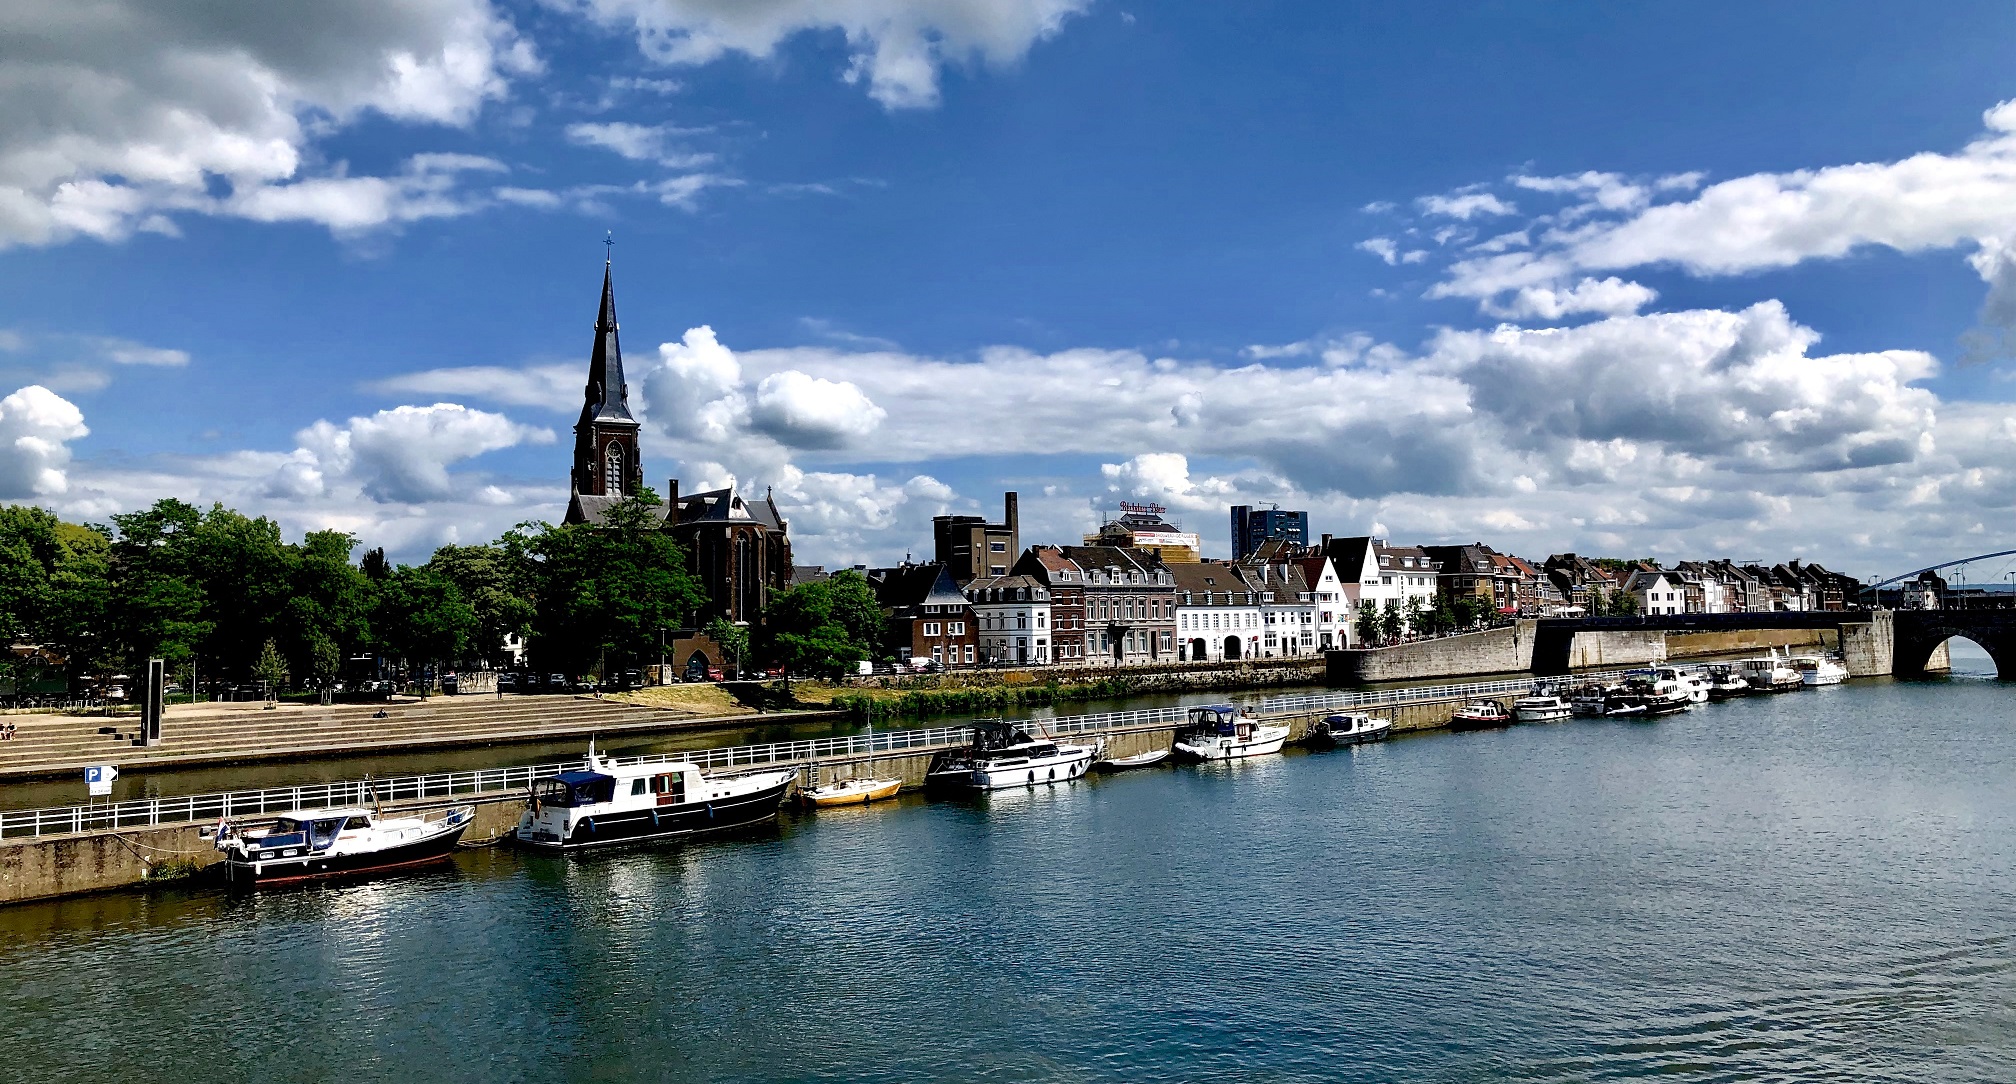  River scene in Maastricht